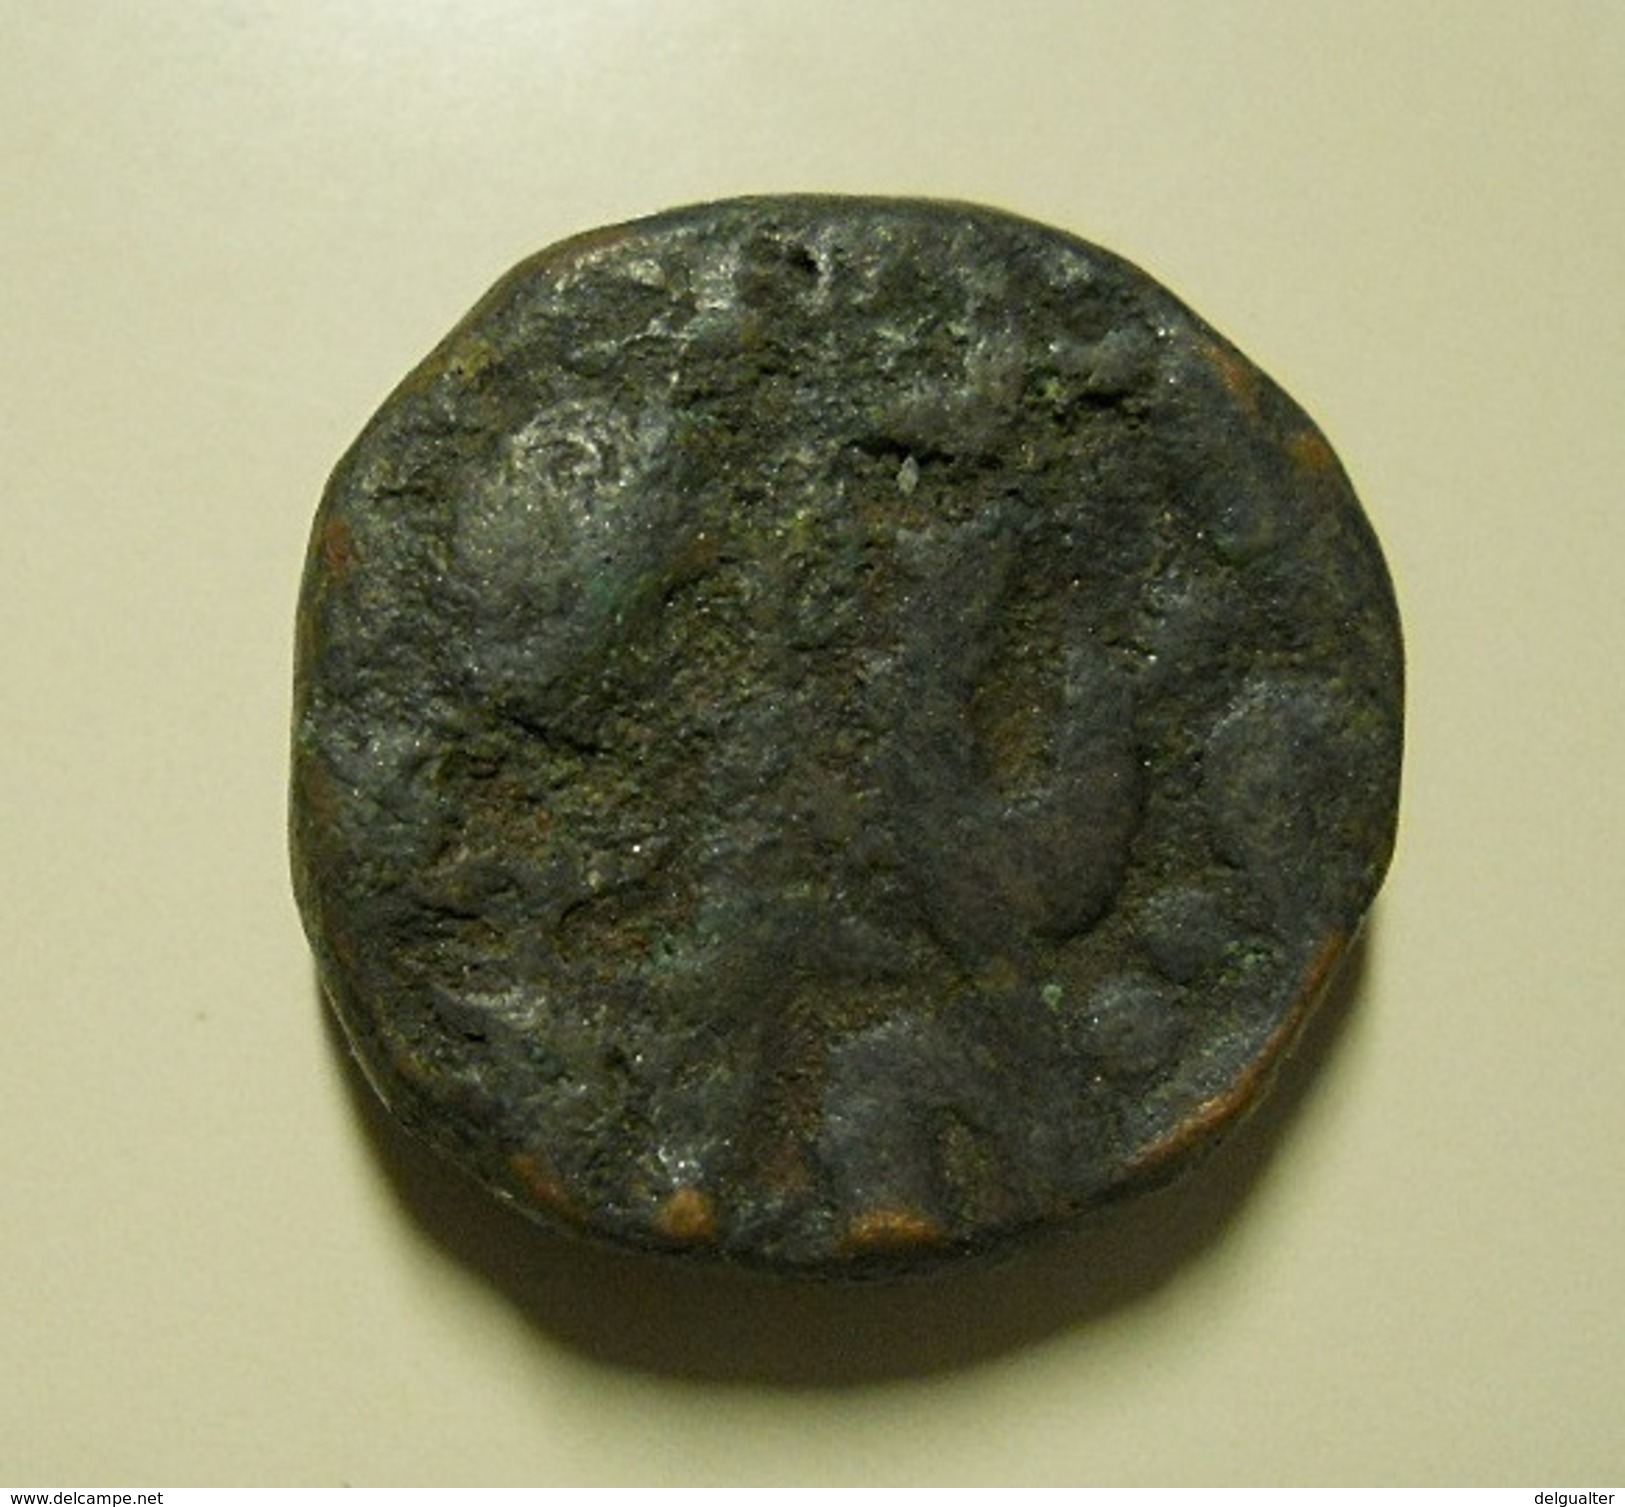 Coin To Identify - Unknown Origin